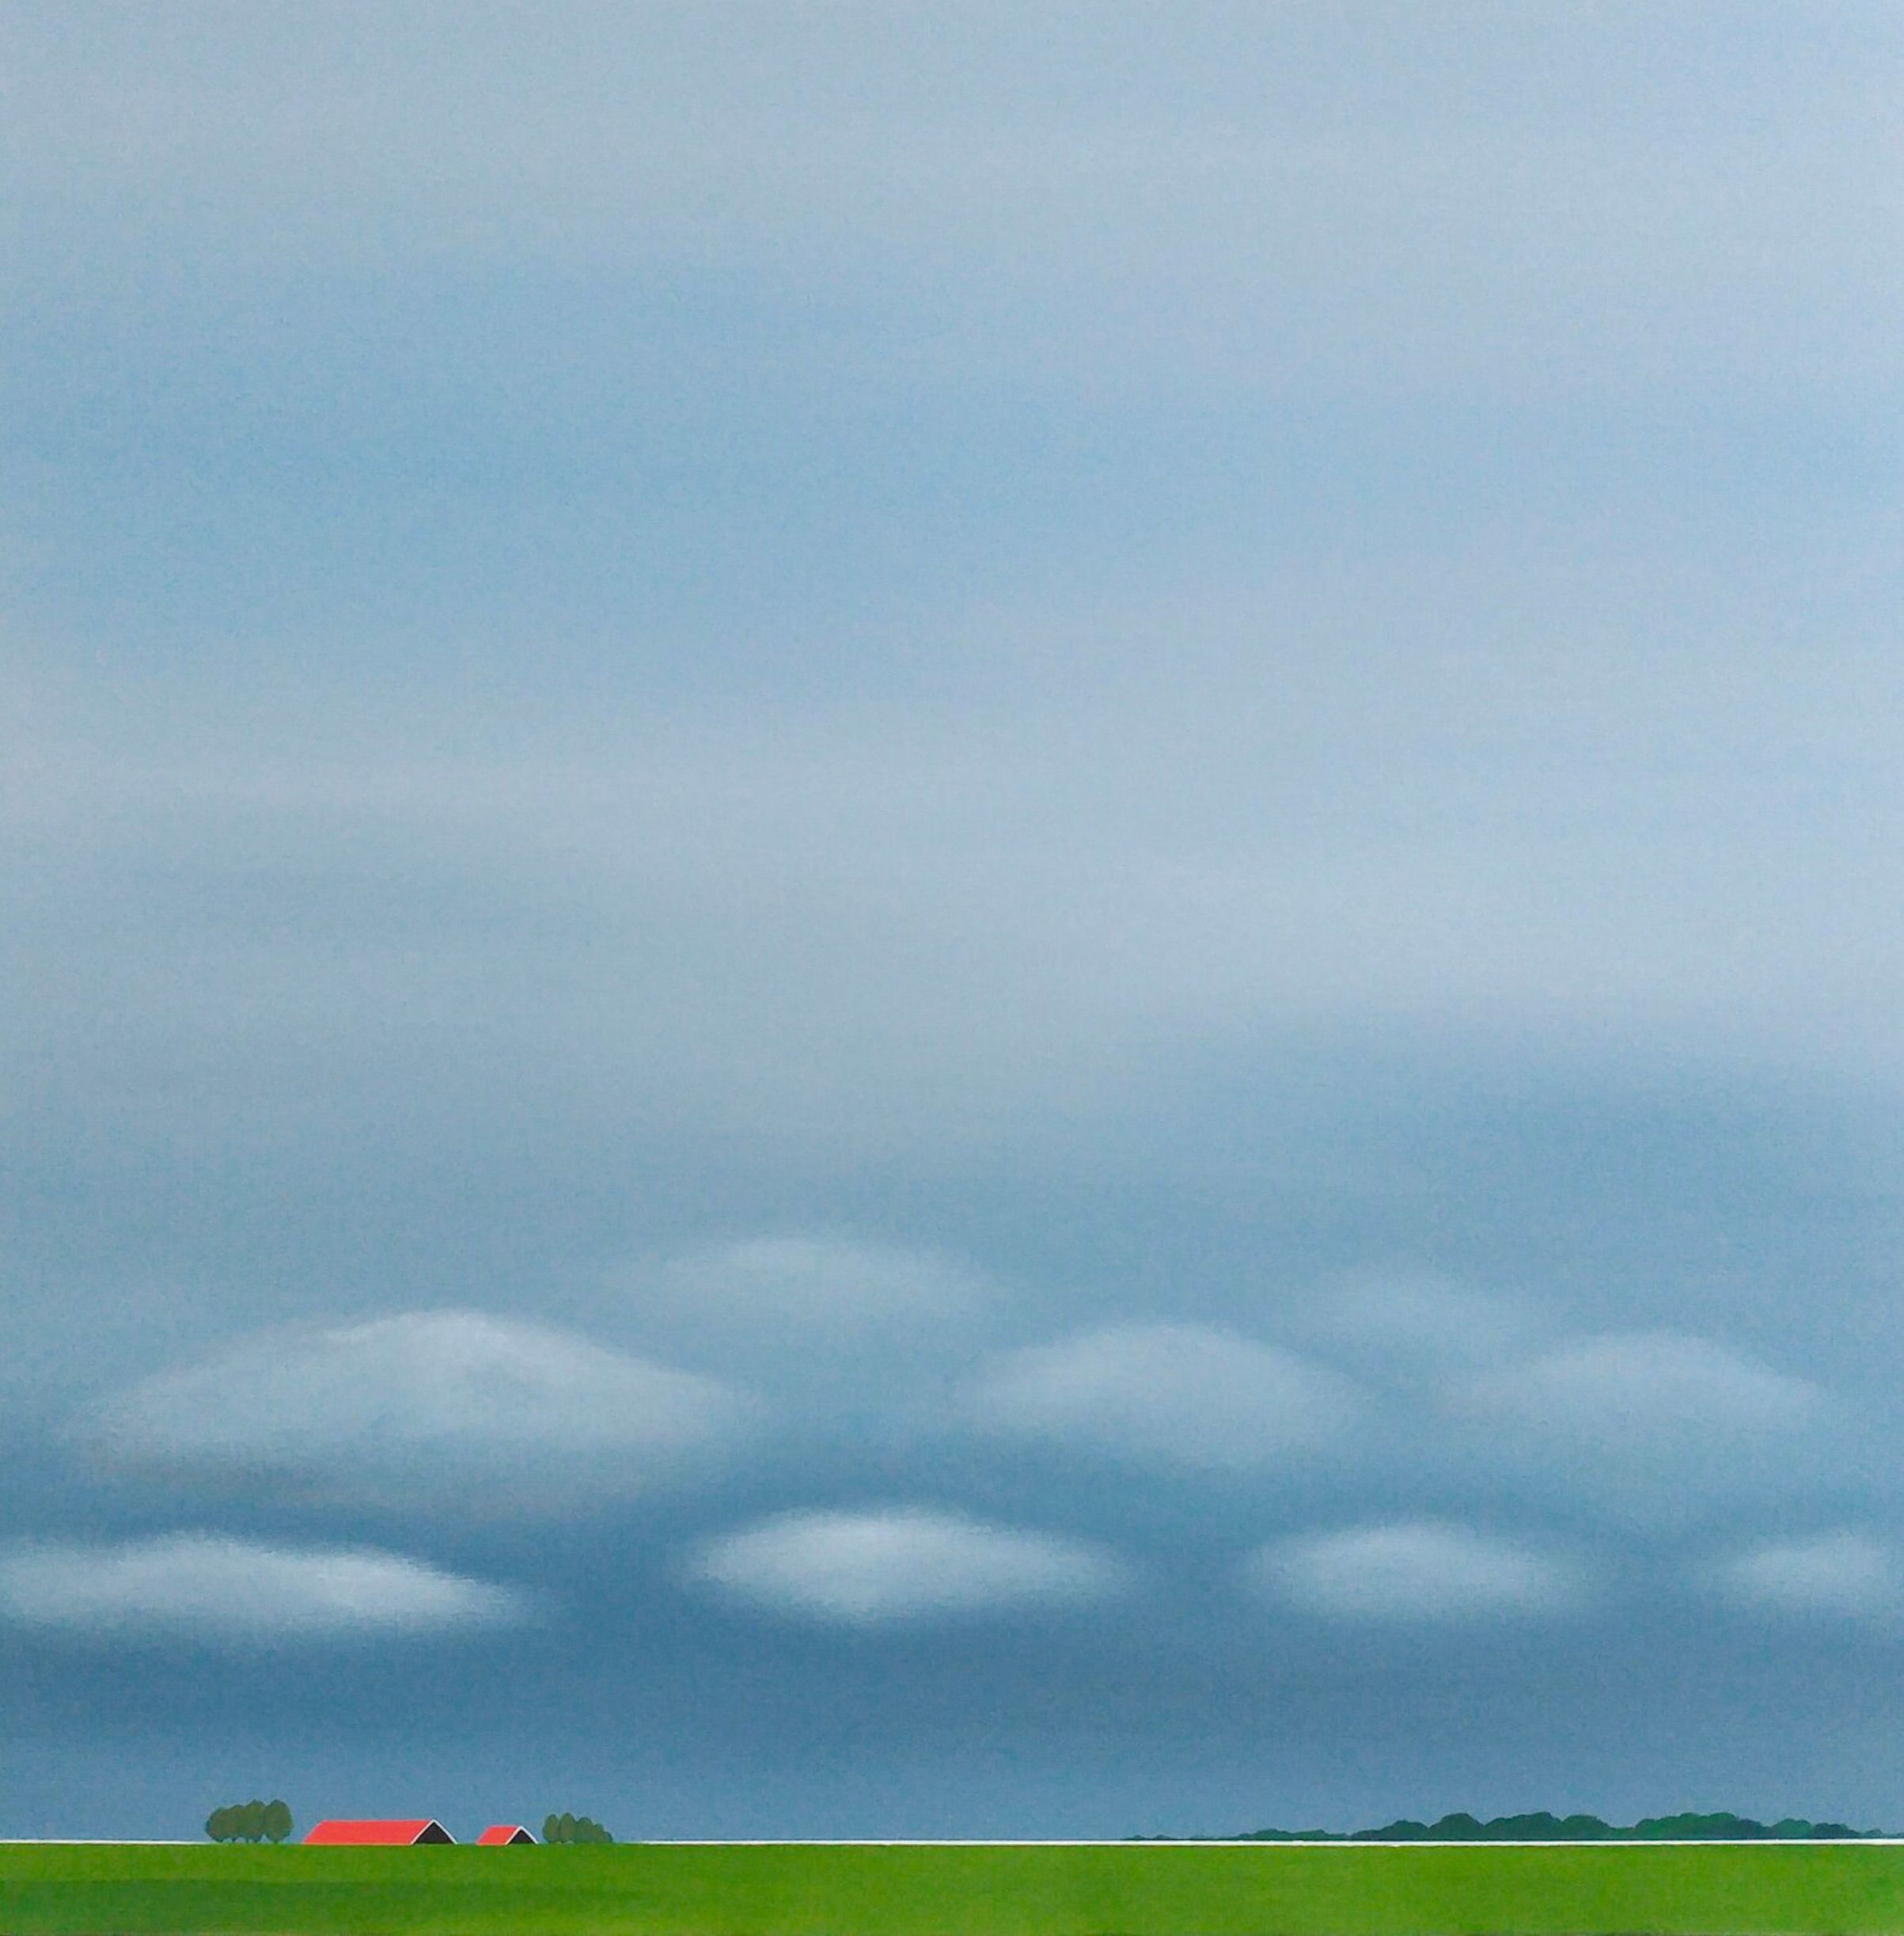 Le tableau "Dutch polder landscape" de Nelly van Nieuwenhuijzen montre un paysage en Zélande. Un immense ciel brumeux et nuageux, des toits rouges, une digue verte et quelques arbres.